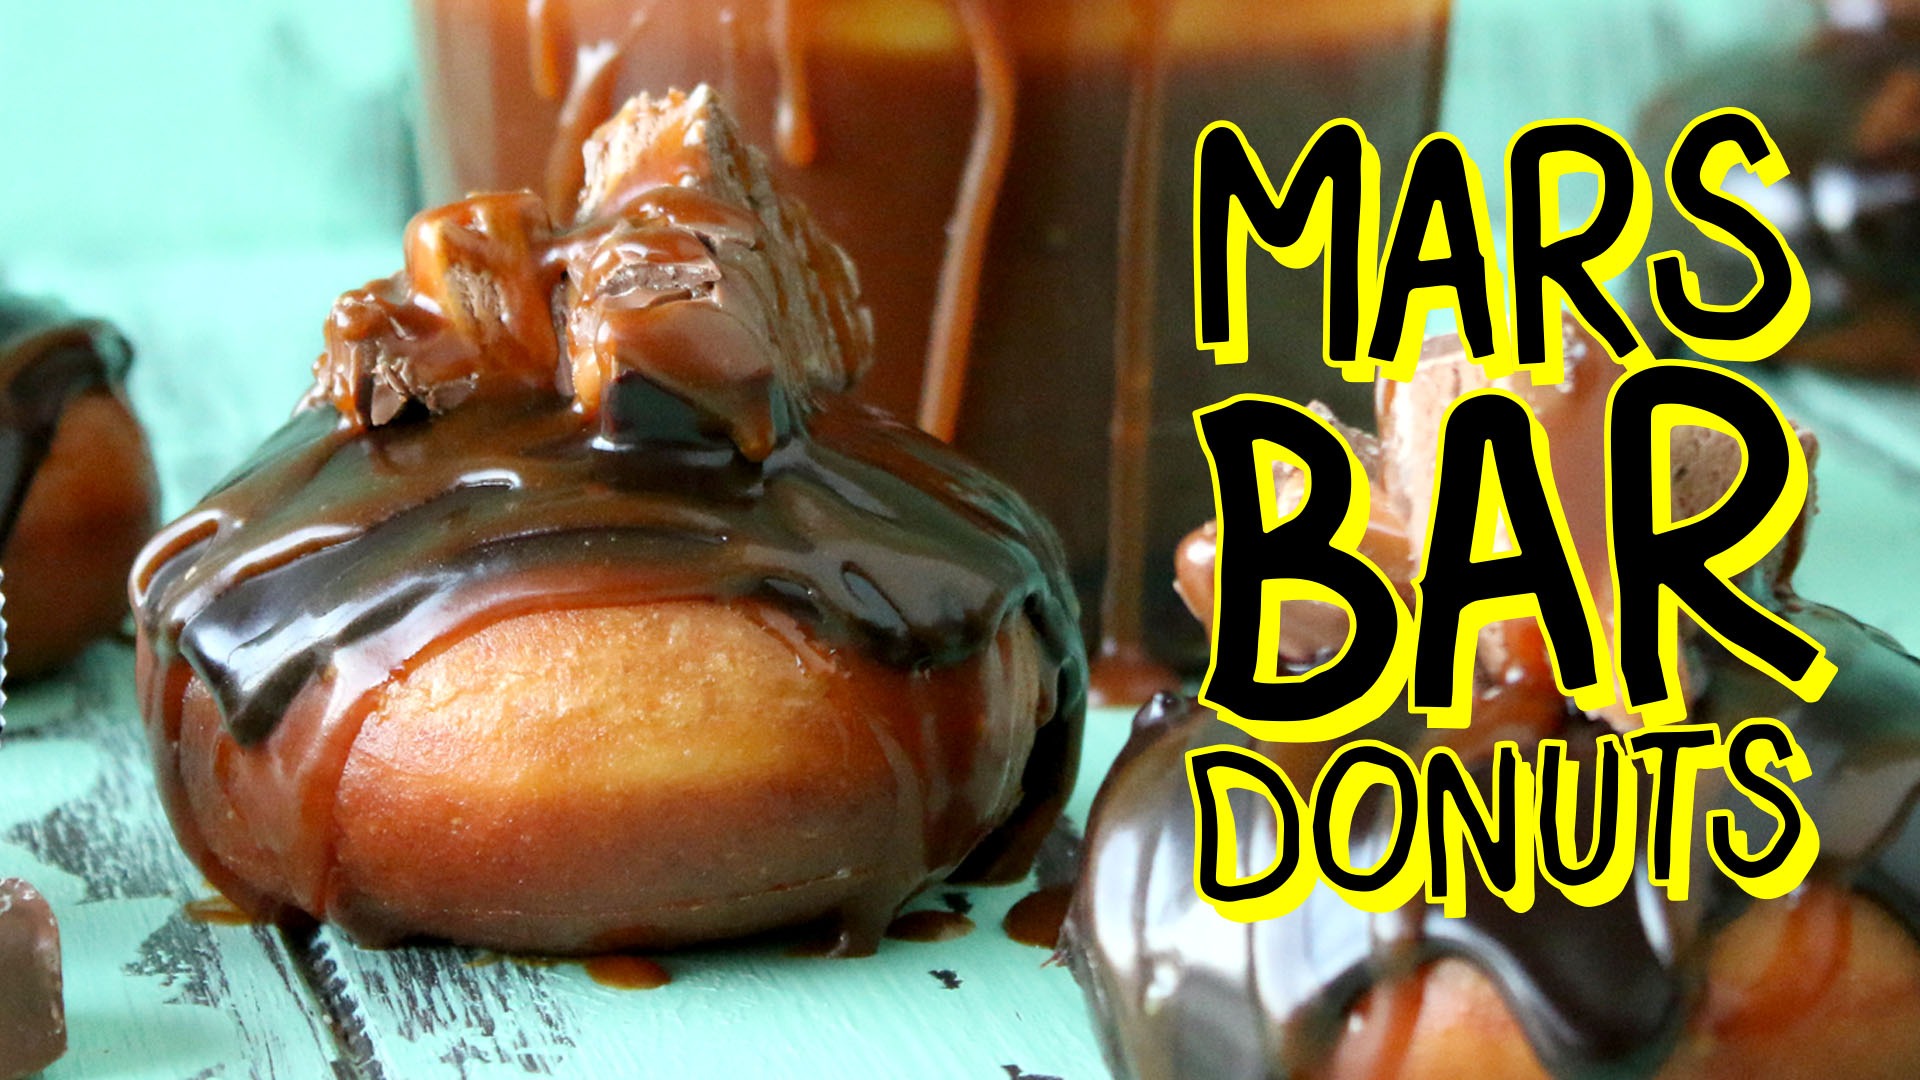 Mars Bar Donuts Tastemade 